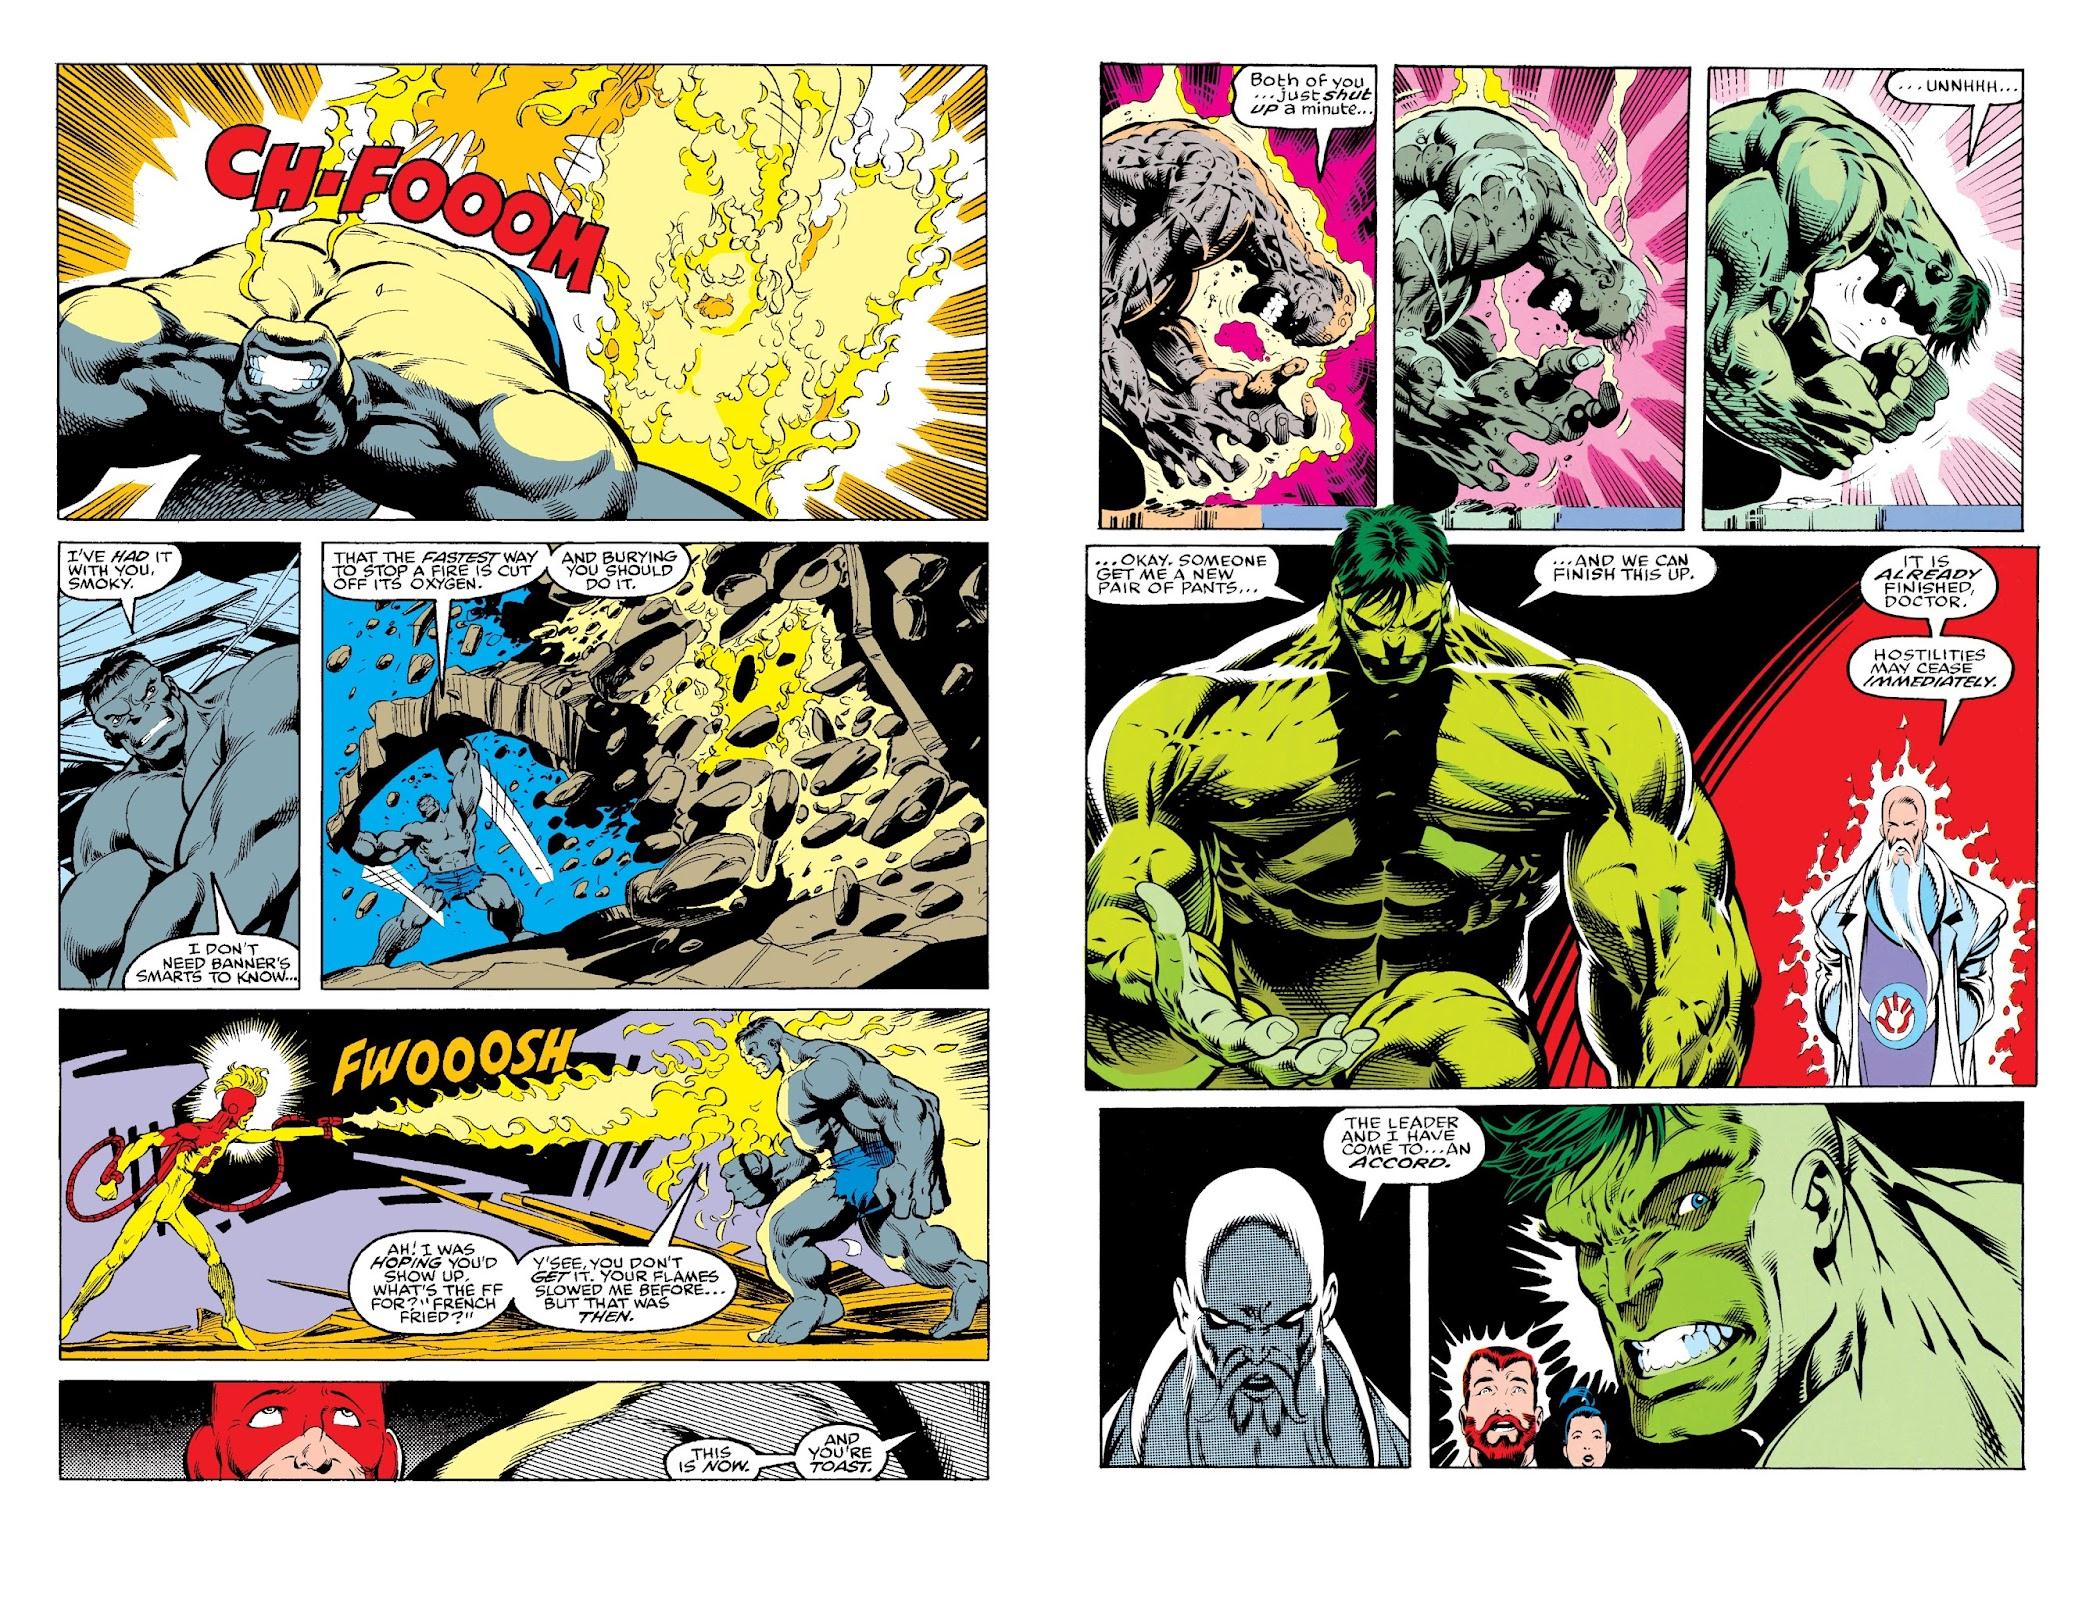 The Incredible Hulk by Peter David Omnibus Vol. 2 review